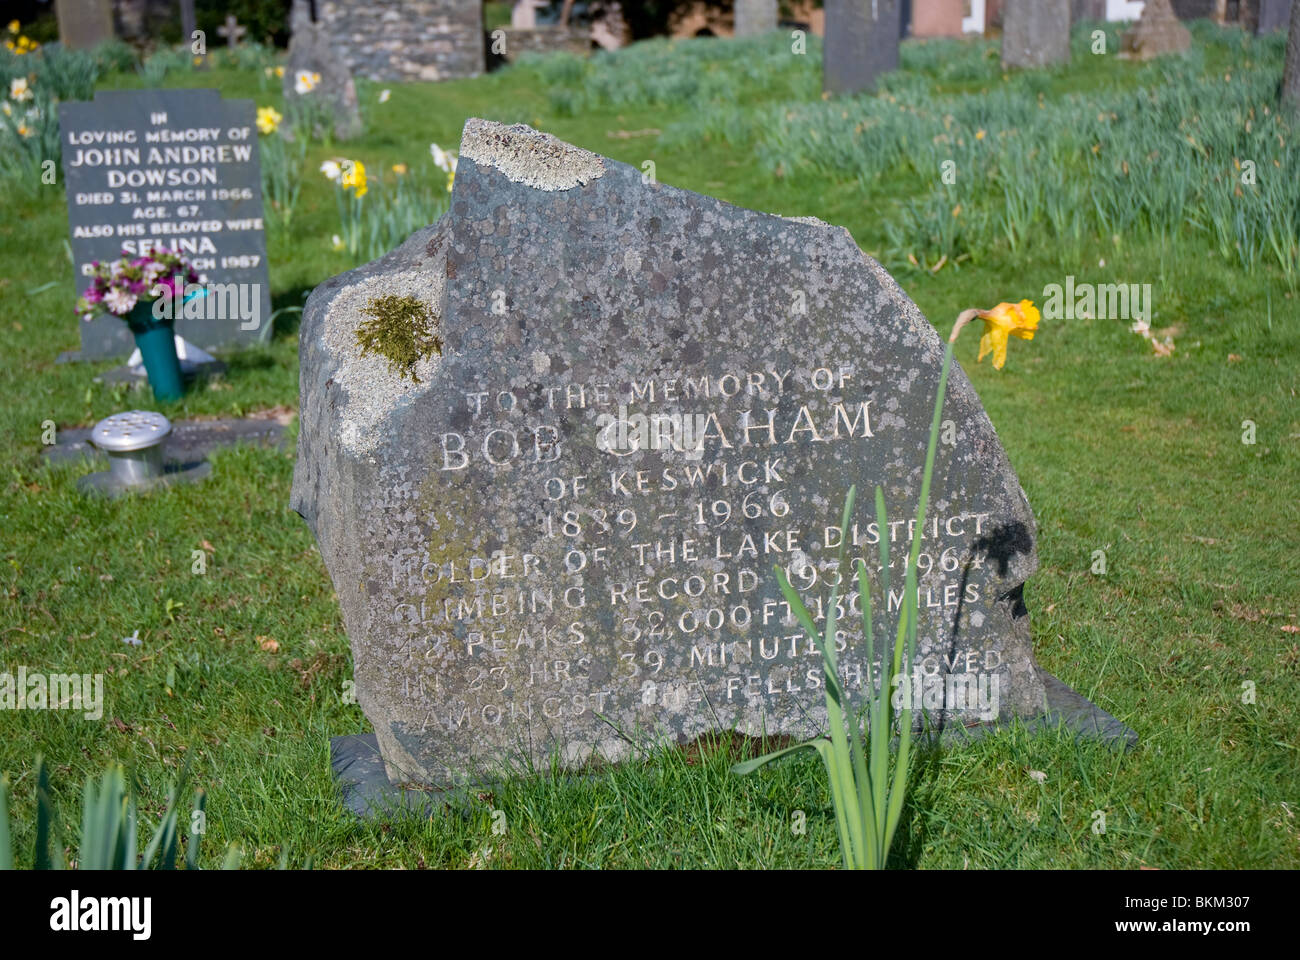 The grave of Bob Graham, legendary fell runner, Borrowdale Church, Stonethwaite Stock Photo